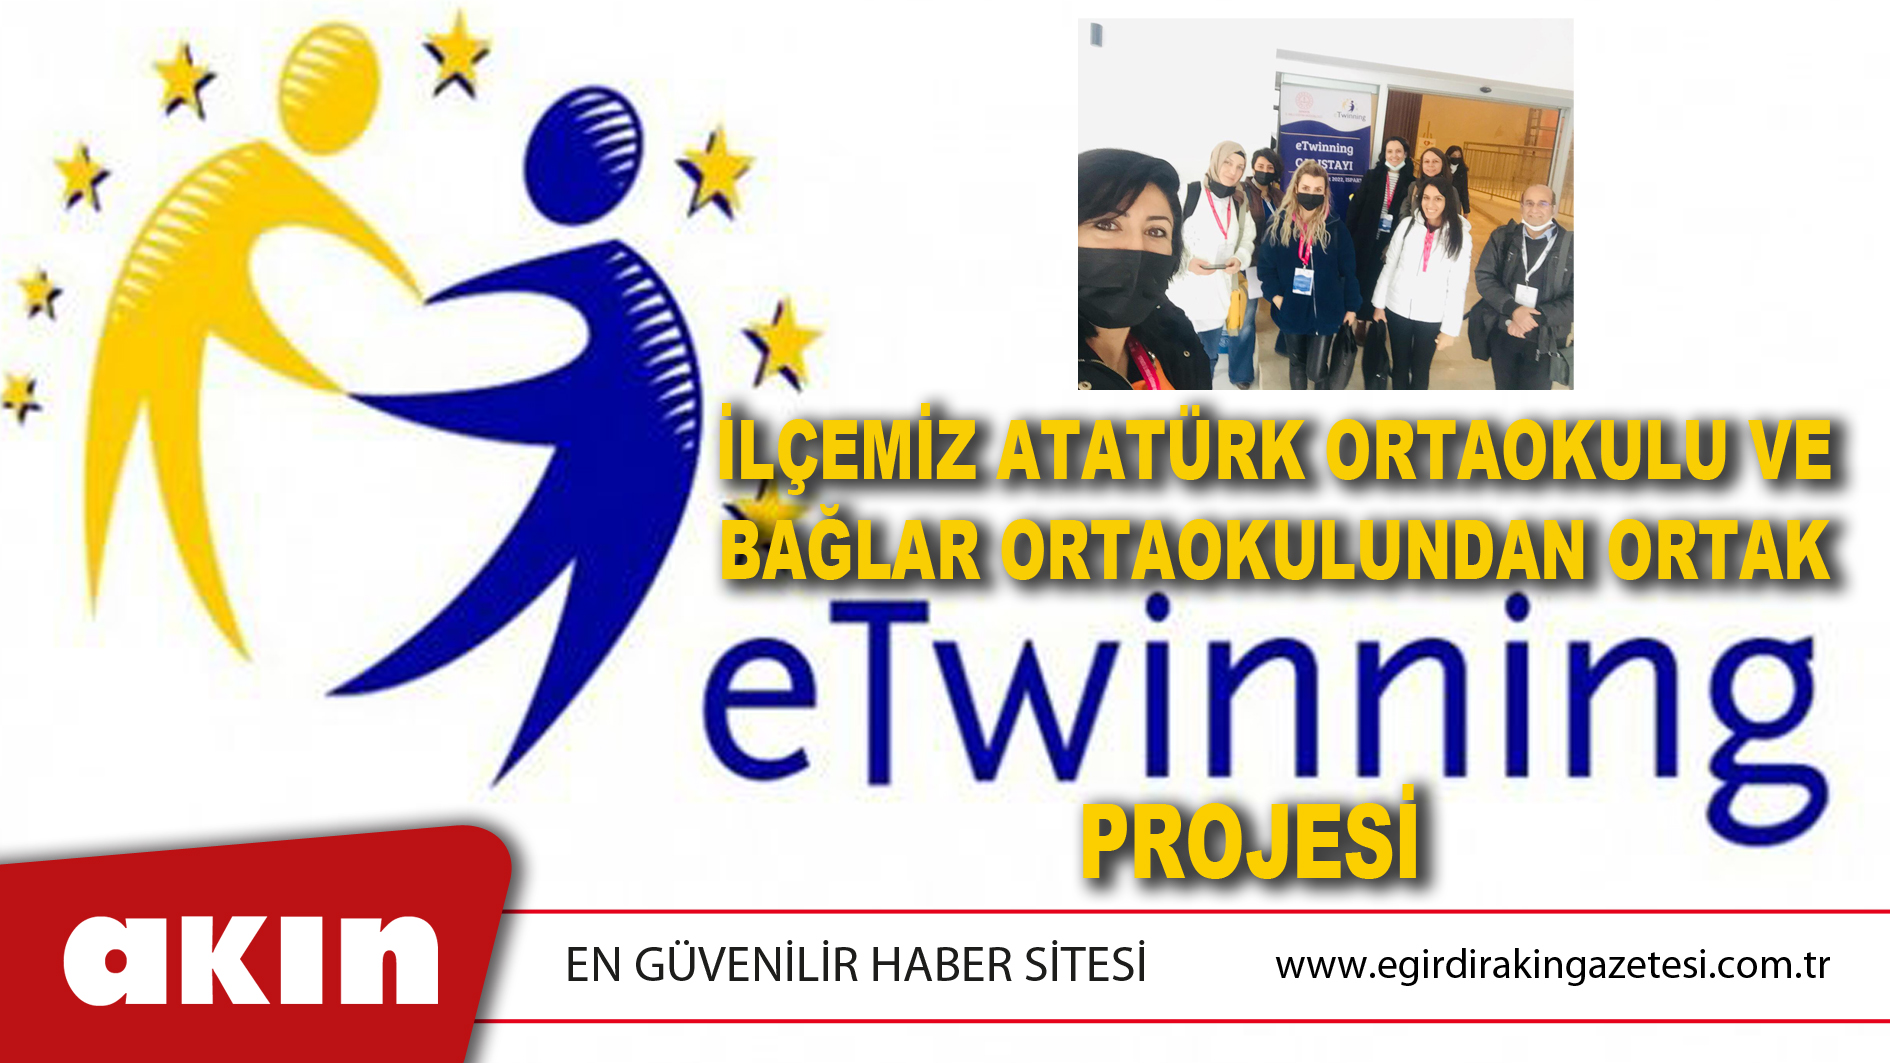 eğirdir haber,akın gazetesi,egirdir haberler,son dakika,İlçemiz Atatürk Ortaokulu Ve Bağlar Ortaokulundan Ortak e-TWINNING Projesi